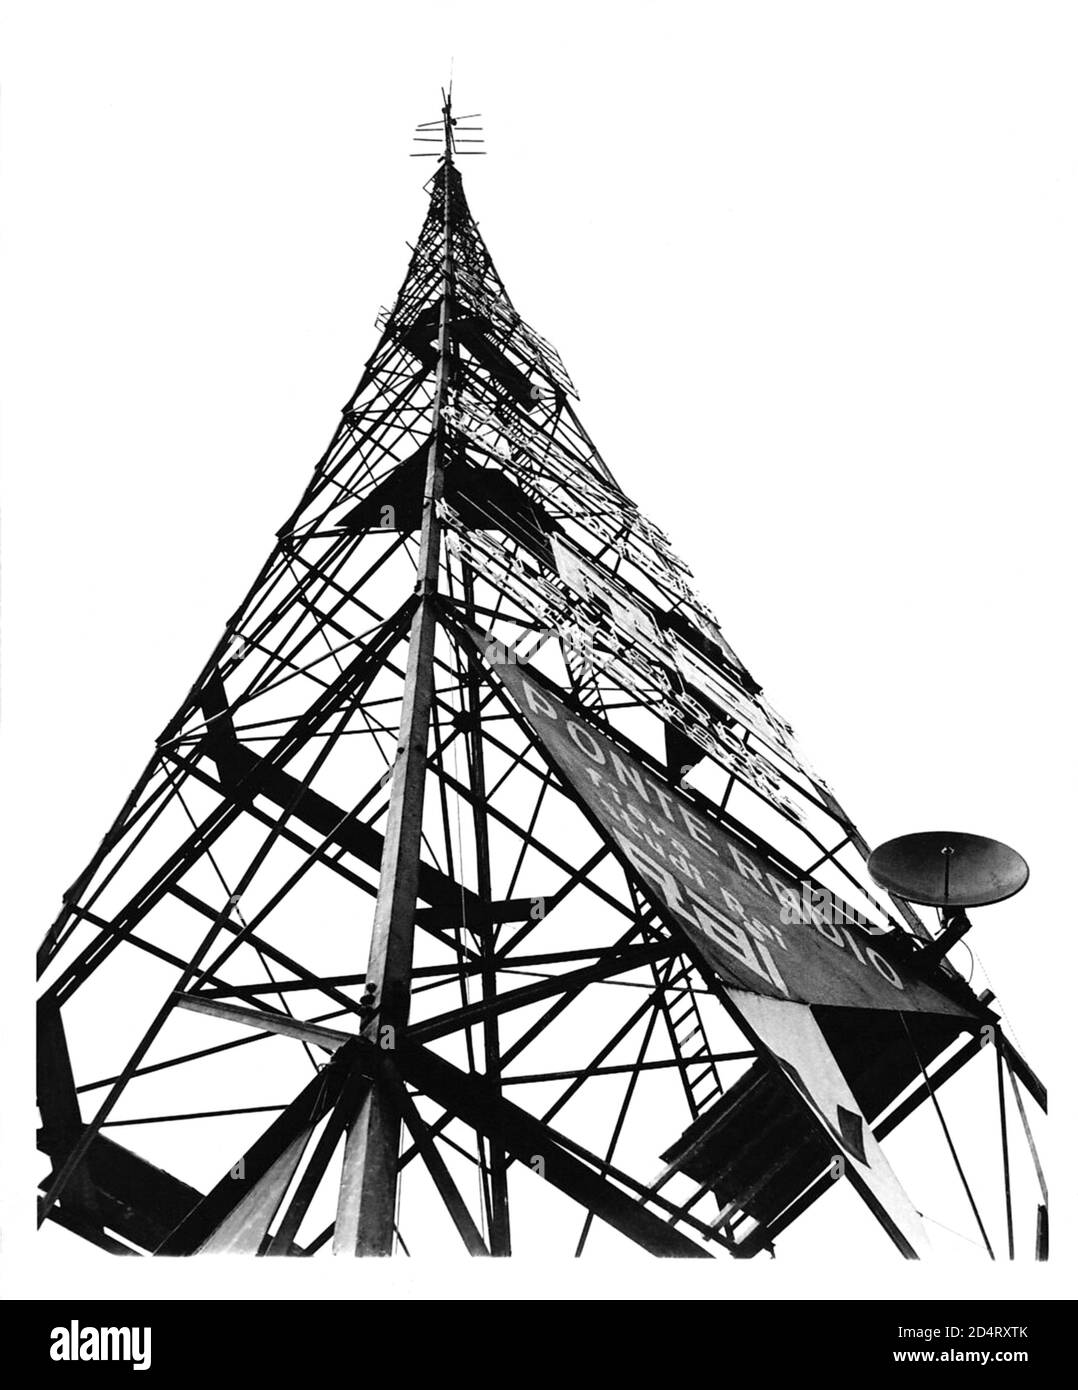 1952, april, MAILAND, ITALIEN: EINE brandneue TV-Trasmiting-Antenne zeigt in der Stadt Mailand nach oben, als Italiens erster TV-Sender in Betrieb geht. Die Videoaufführungen, die vorübergehend auf den Mailänder Raum beschränkt sind, sind das Hauptmerkmal der Industriemesse ( FIERA CAMPIONARIA DI MILANO ). Sendungen werden voraussichtlich im ganzen Land bis 1954 genossen werden. - TELEVISIONE - FERNSEHEN - MAILAND - RUNDFUNK - RADIOTELEVISIONE ITALIANA - RAI - R.A.I. - Radio Audizioni Italiane - ITALIA - ANNI CINQUANTA - 1950 - 50er - '50 --- Archivio GBB Stockfoto